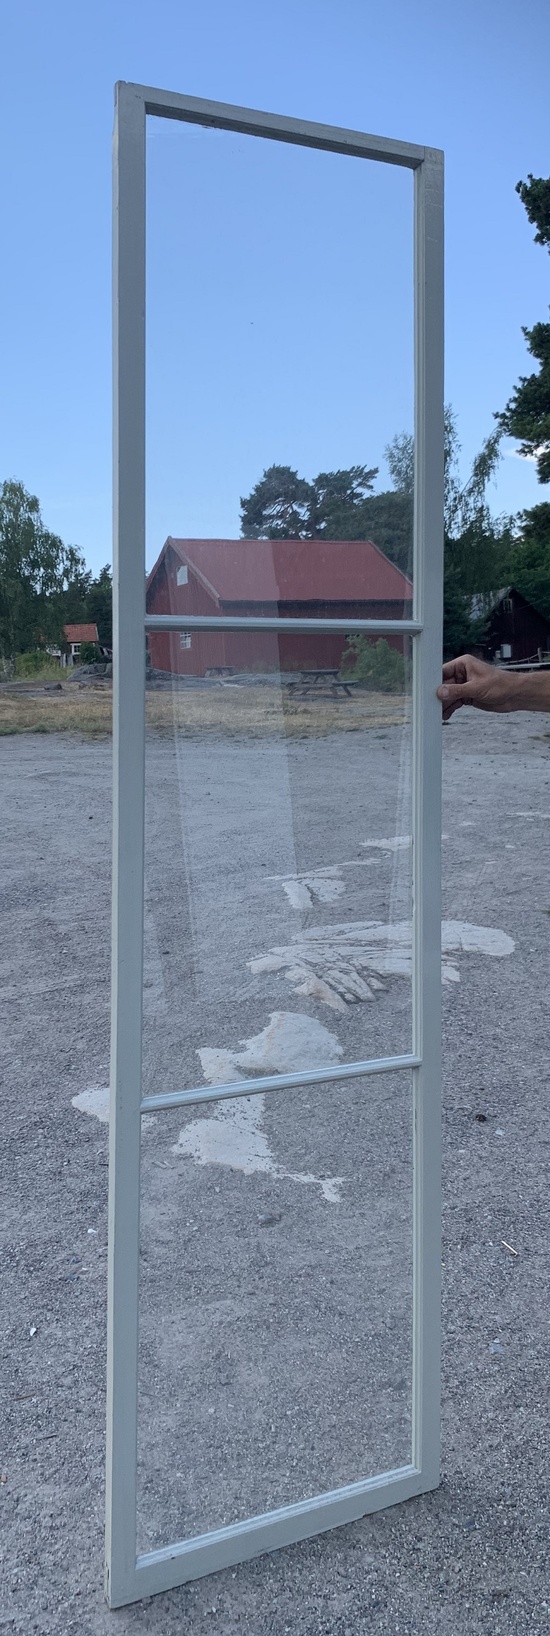 Stor fönsterbåge 59 x 229 cm, 5 st.  Finns på Överjärva